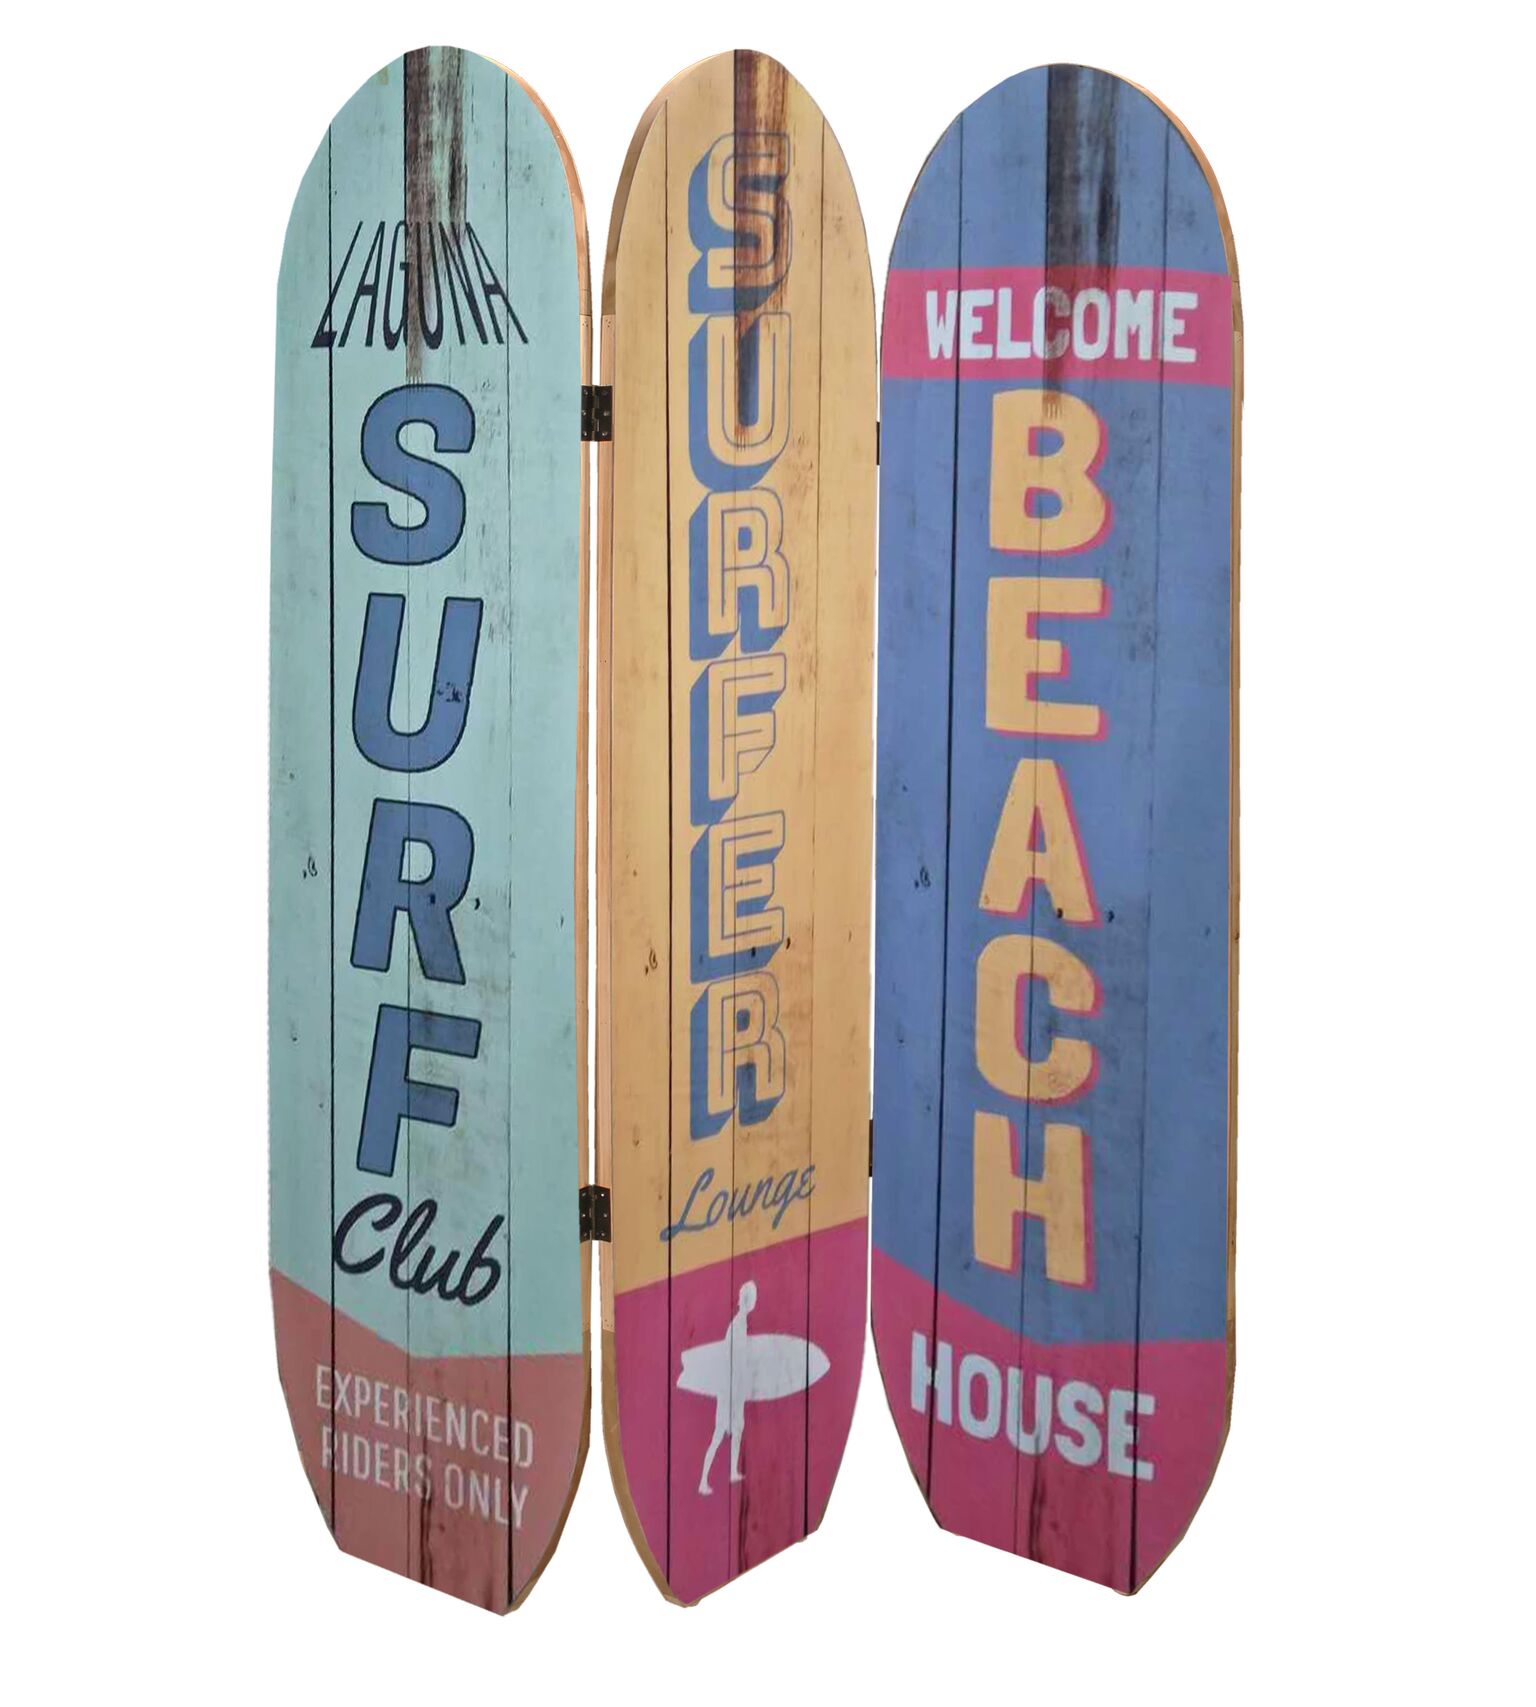 47" x 1" x 71" Multicolor Coastal Wood Surfboard Screen